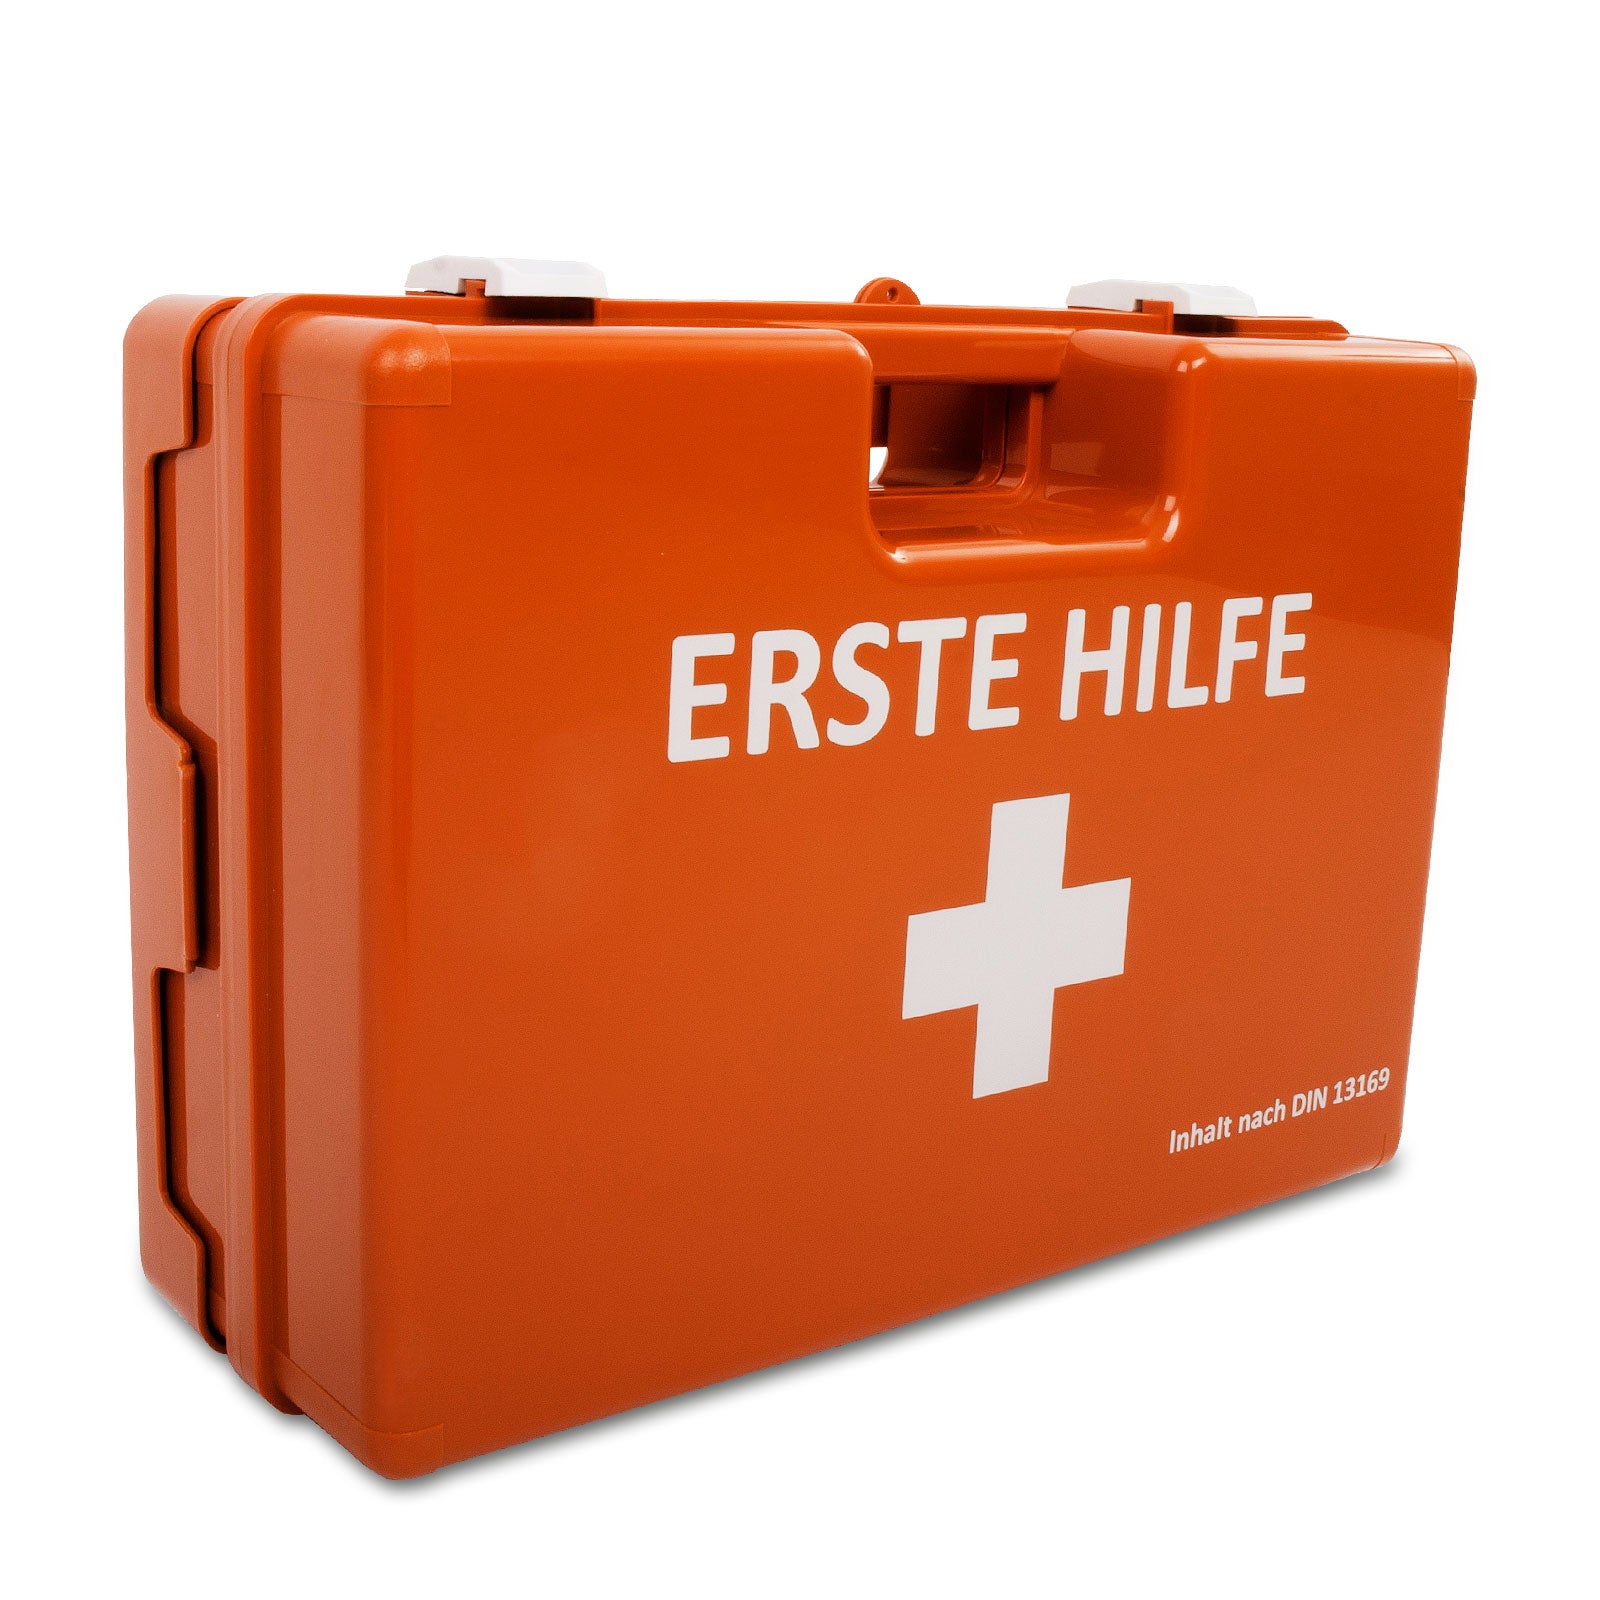 Erste-Hilfe-Koffer | Groß | DIN 13169 | Für große Betriebe